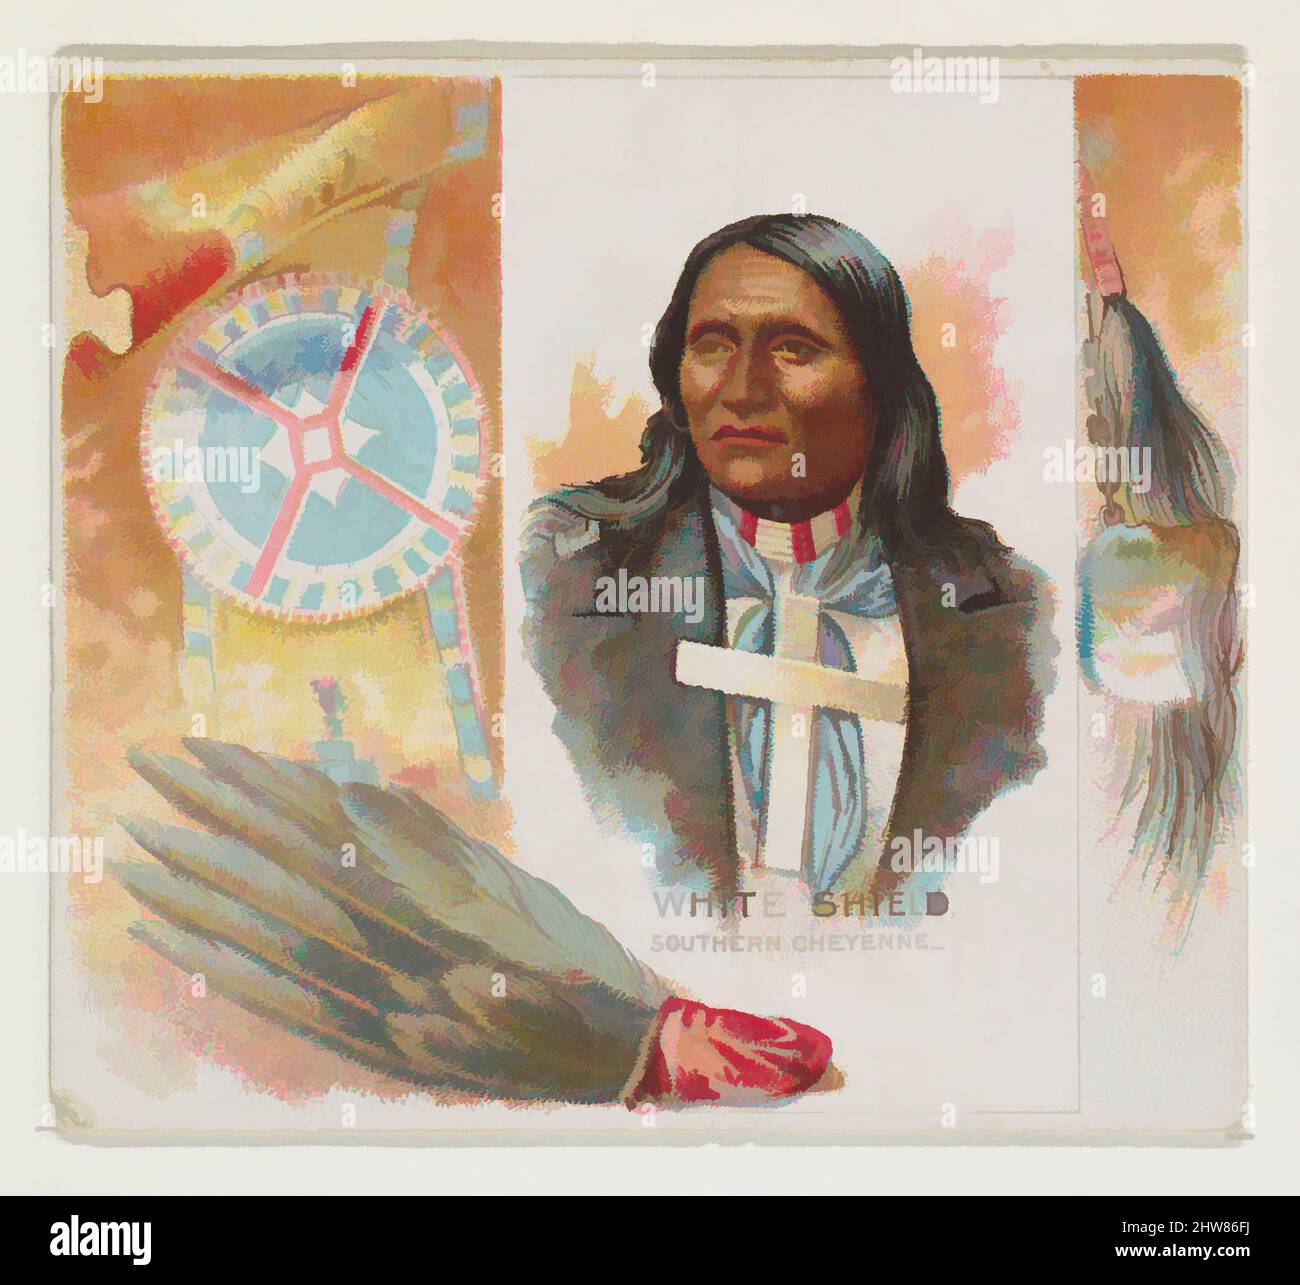 Arte inspirado en White Shield, Southern Cheyenne, de la serie American Indian Chiefs (N36) para cigarrillos Allen & Ginter, 1888, litografía en color comercial, lámina: 2 7/8 x 3 1/4 pulg. (7,3 x 8,3 cm), Tarjetas comerciales de la serie 'American Indian Chiefs' (N36), publicado en 1888 en un conjunto, obras clásicas modernizadas por Artotop con un toque de modernidad. Formas, color y valor, atractivo impacto visual en el arte Emociones a través de la libertad de las obras de arte de una manera contemporánea. Un mensaje atemporal que busca una nueva dirección totalmente creativa. Artistas que se están volviendo al medio digital y creando el Artotop NFT Foto de stock